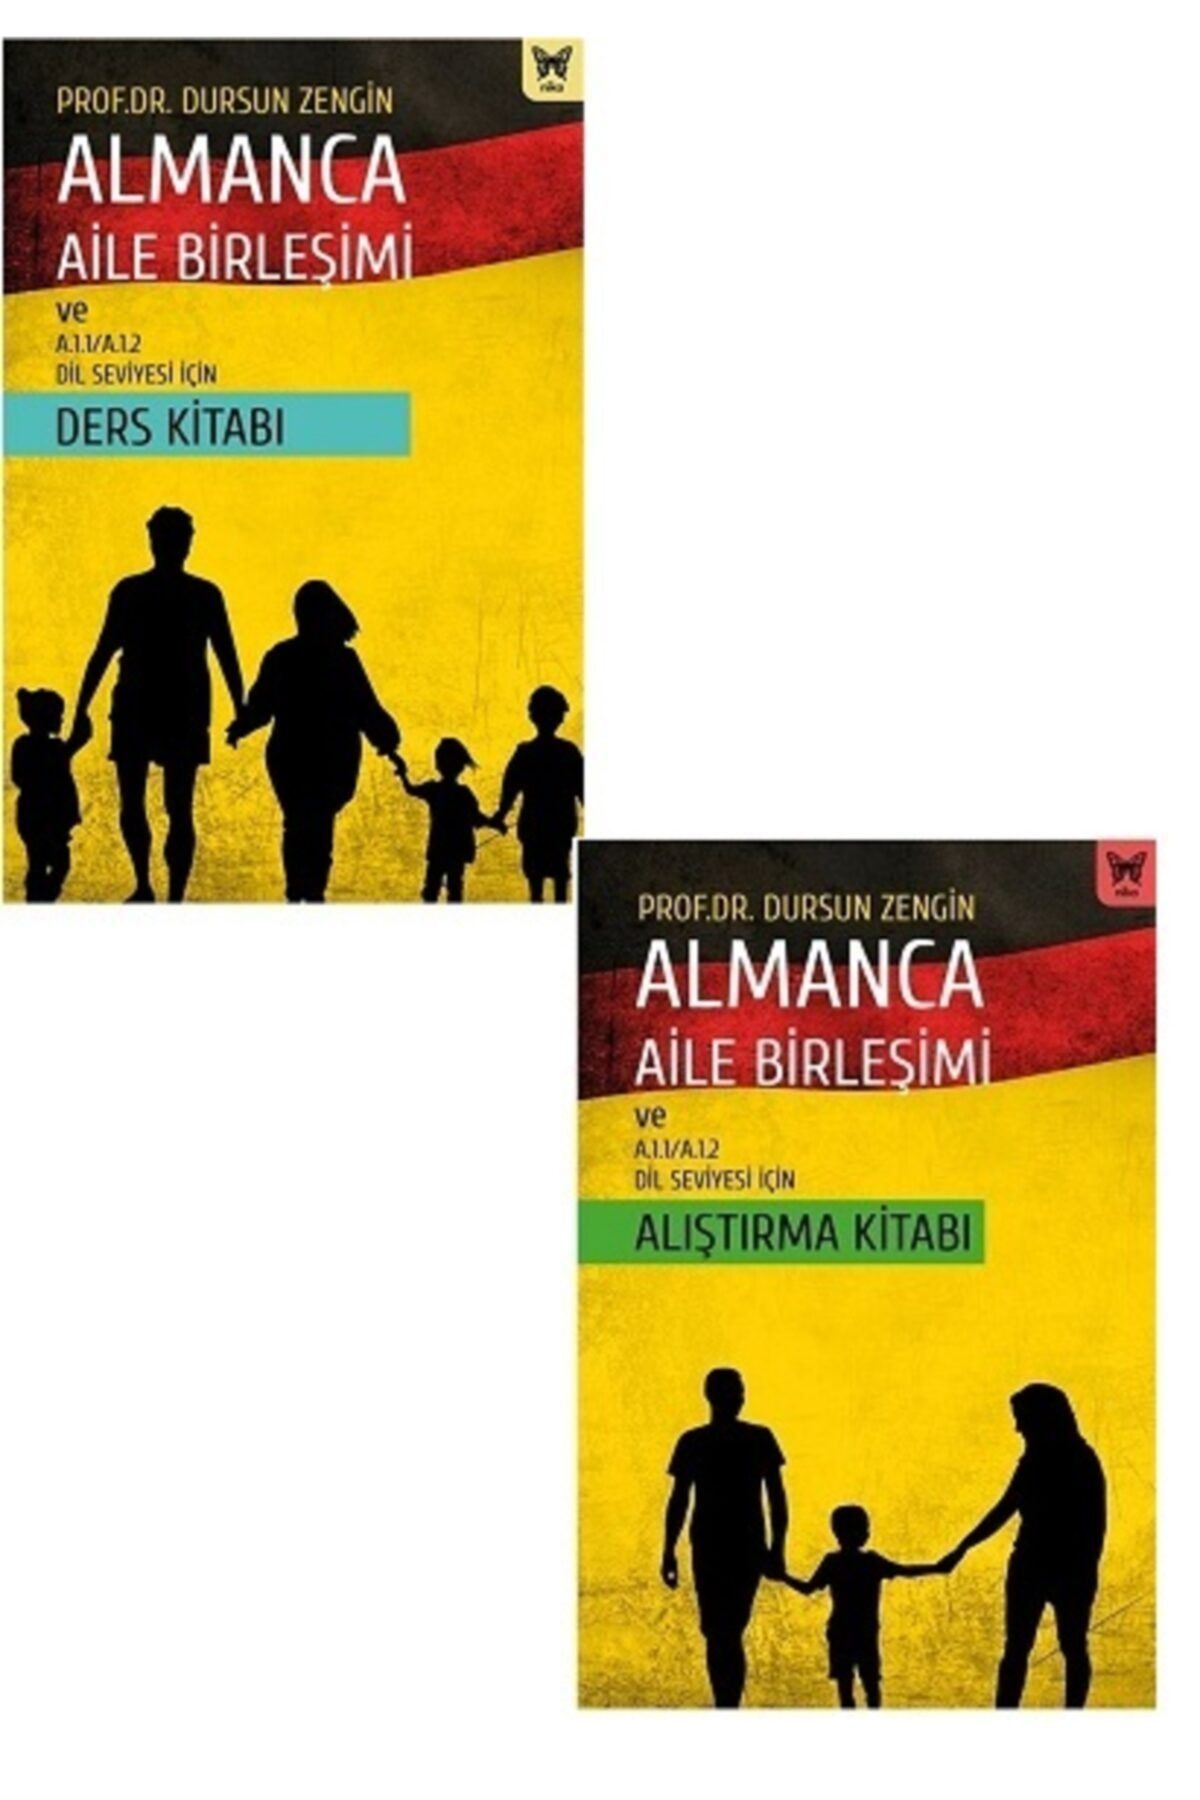 Nika Yayınevi Almanca Aile Birleşimi Ve A.1.1 A.1.2 Dil Seviyesi Için Ders Kitabı Ve Alıştırma Kitabı Seti